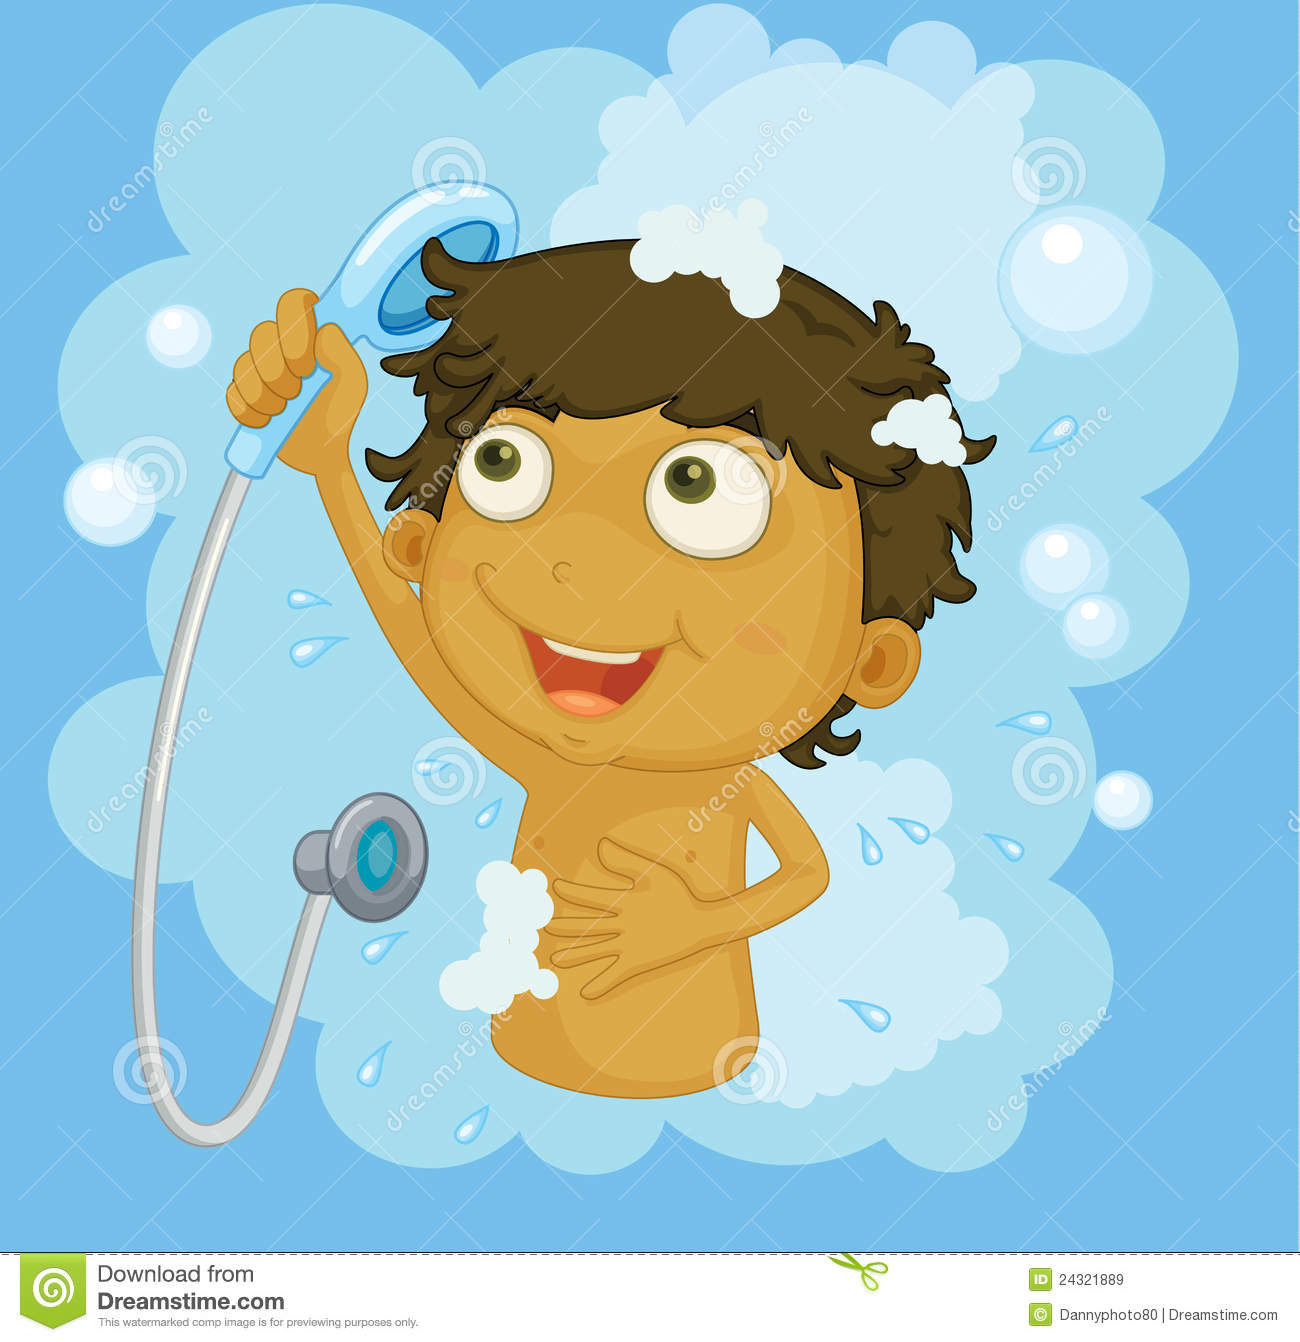 Child taking shower.